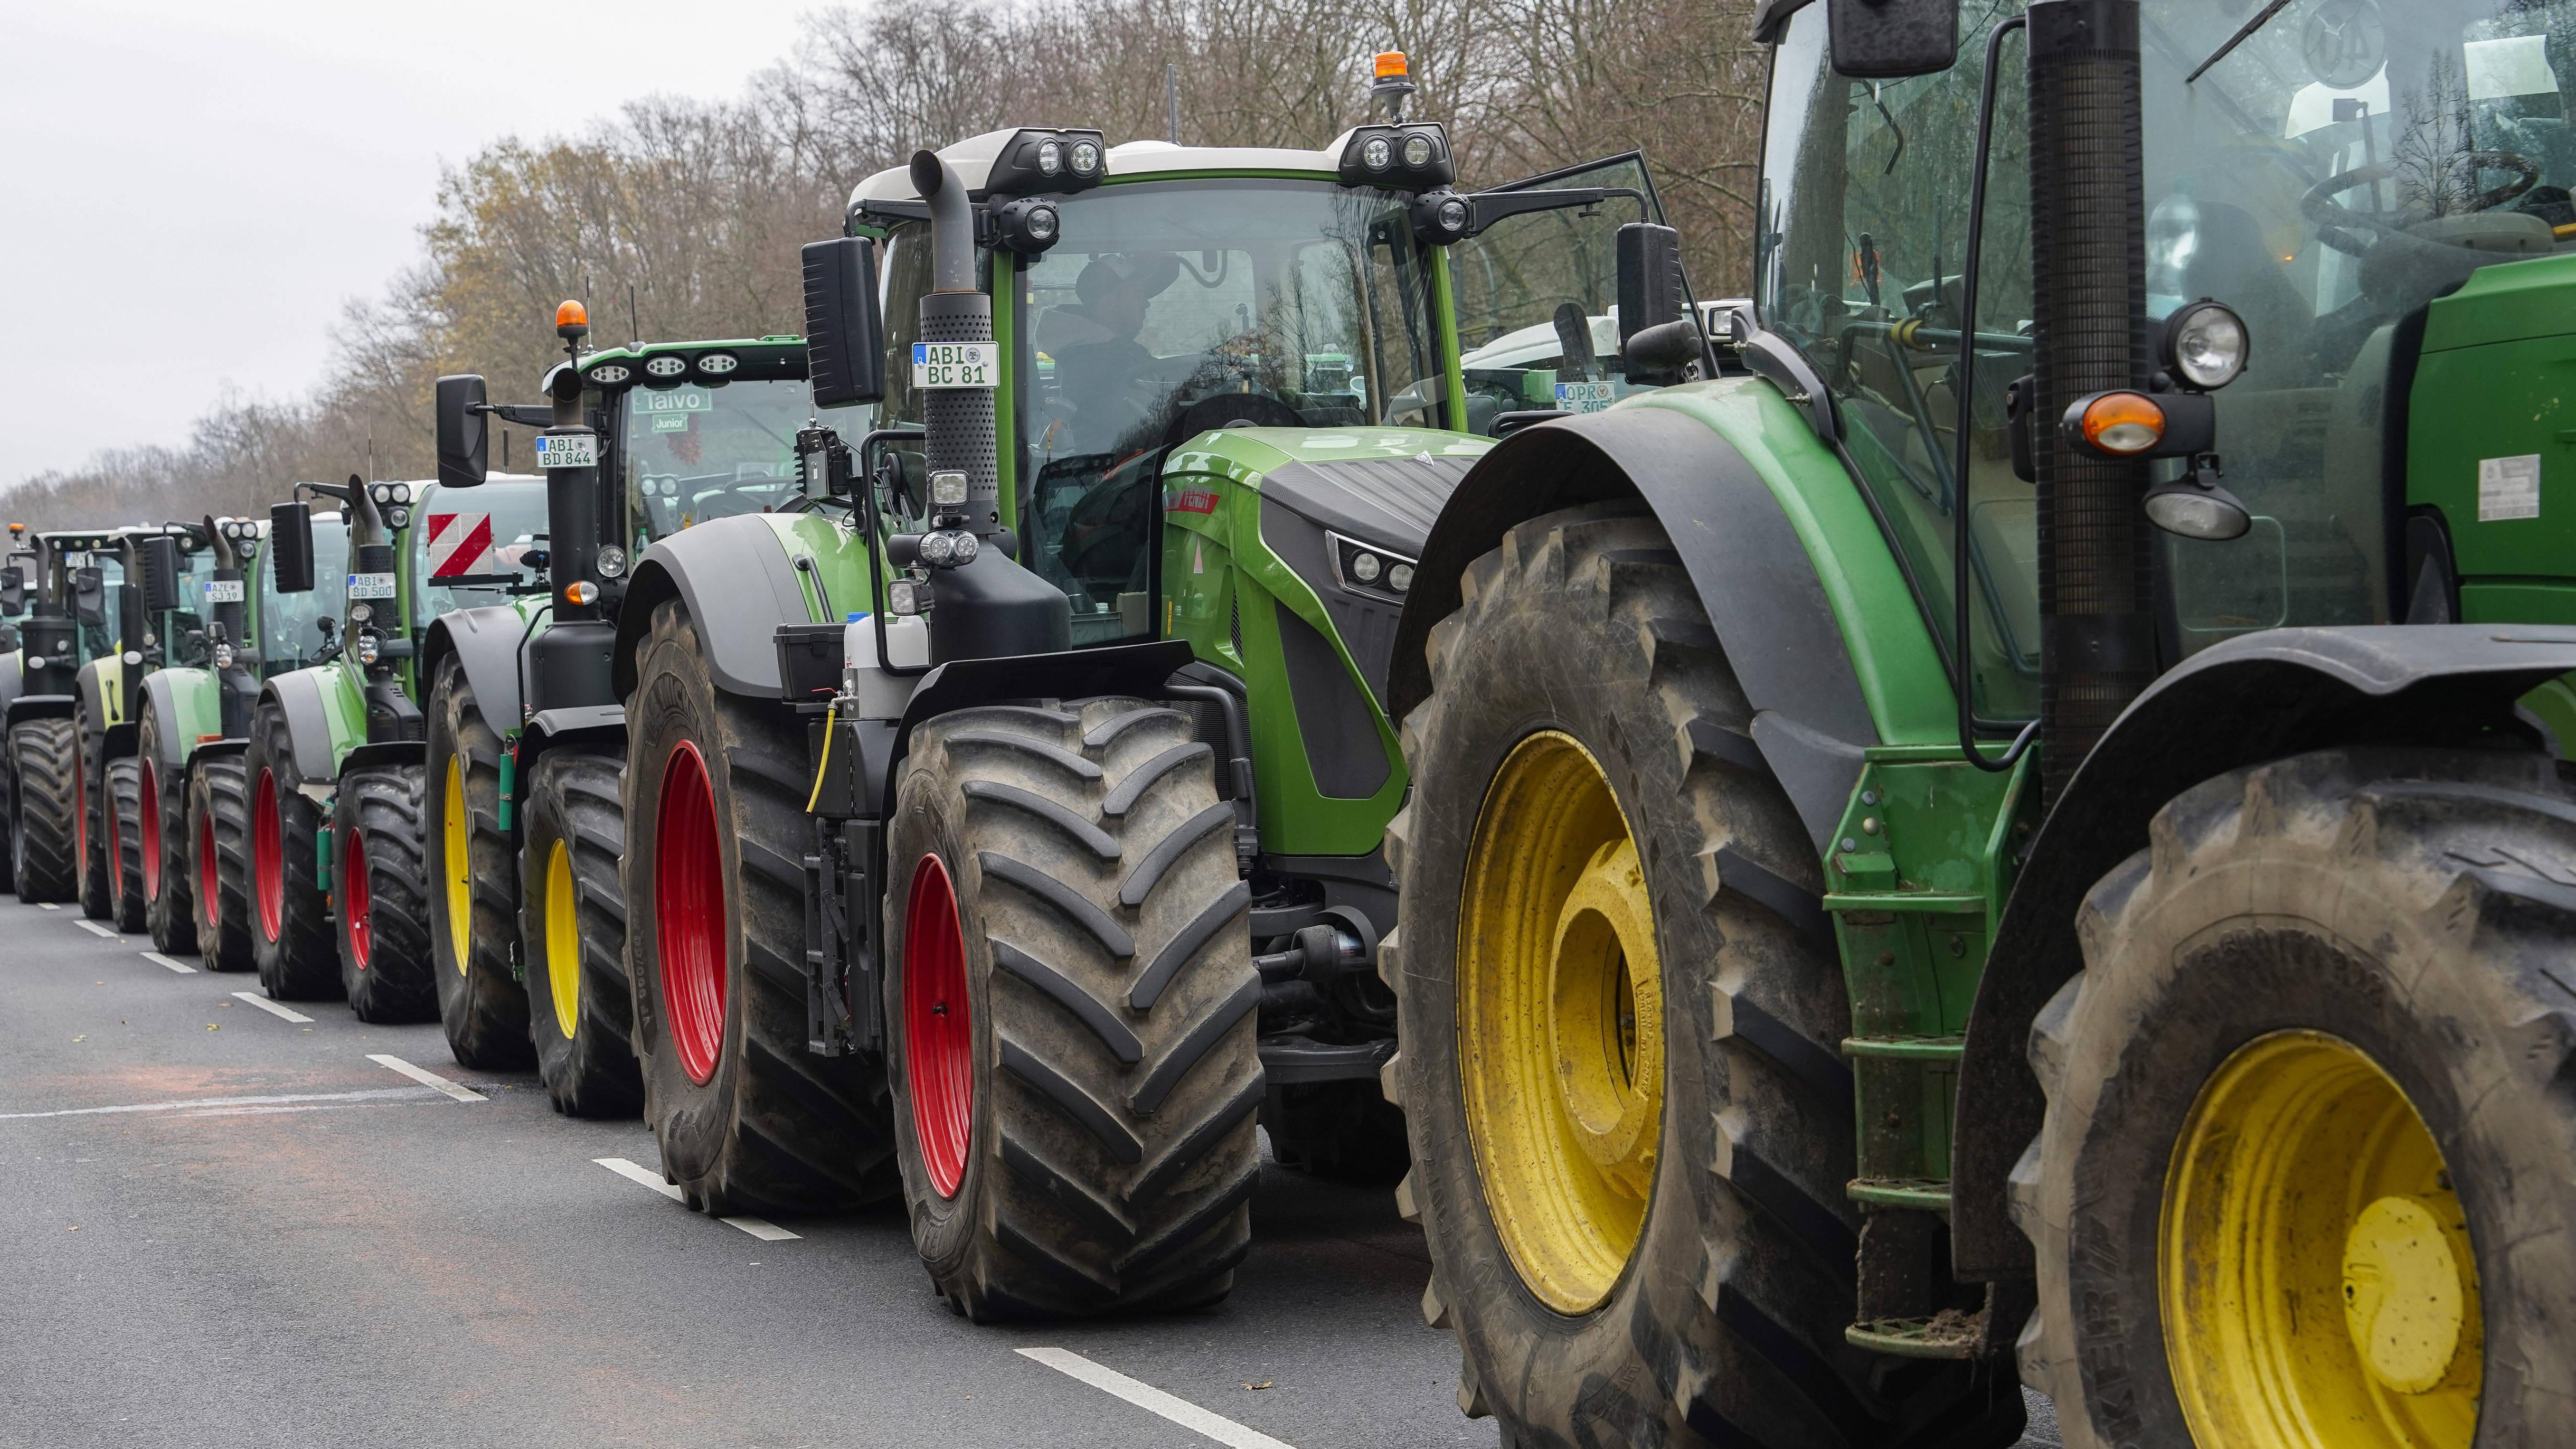 Bauernproteste in den Niederlanden: Polizei beschlagnahmt Traktoren